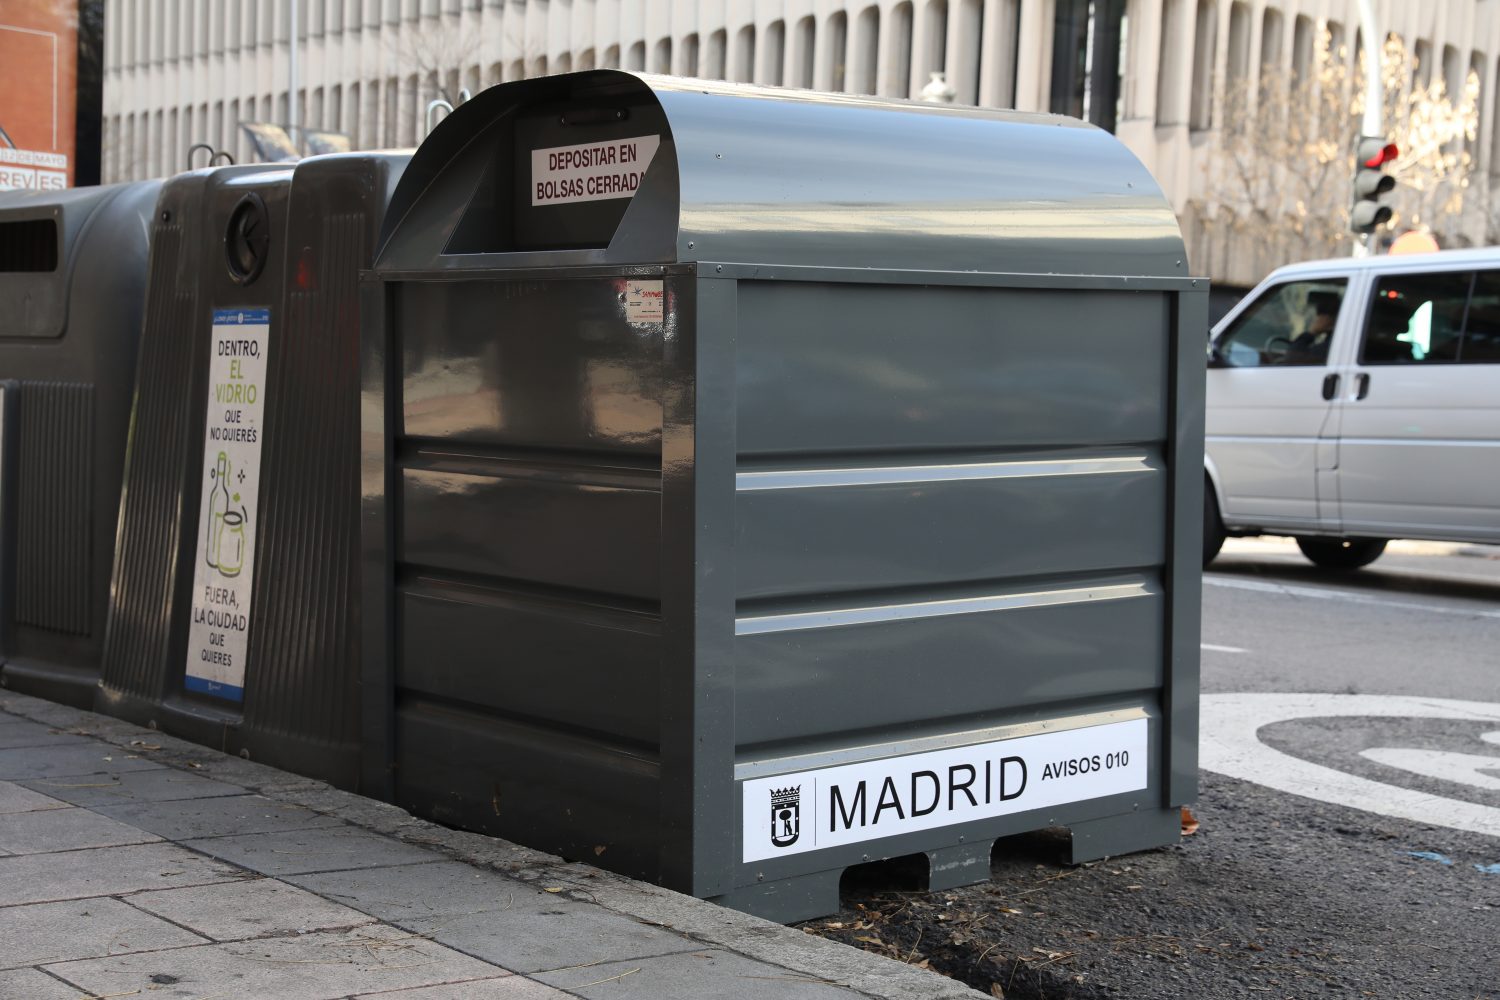 Madrid estrena un nuevo servicio de recogida de ropa usada con 784 contenedores – Diario del Ayuntamiento Madrid